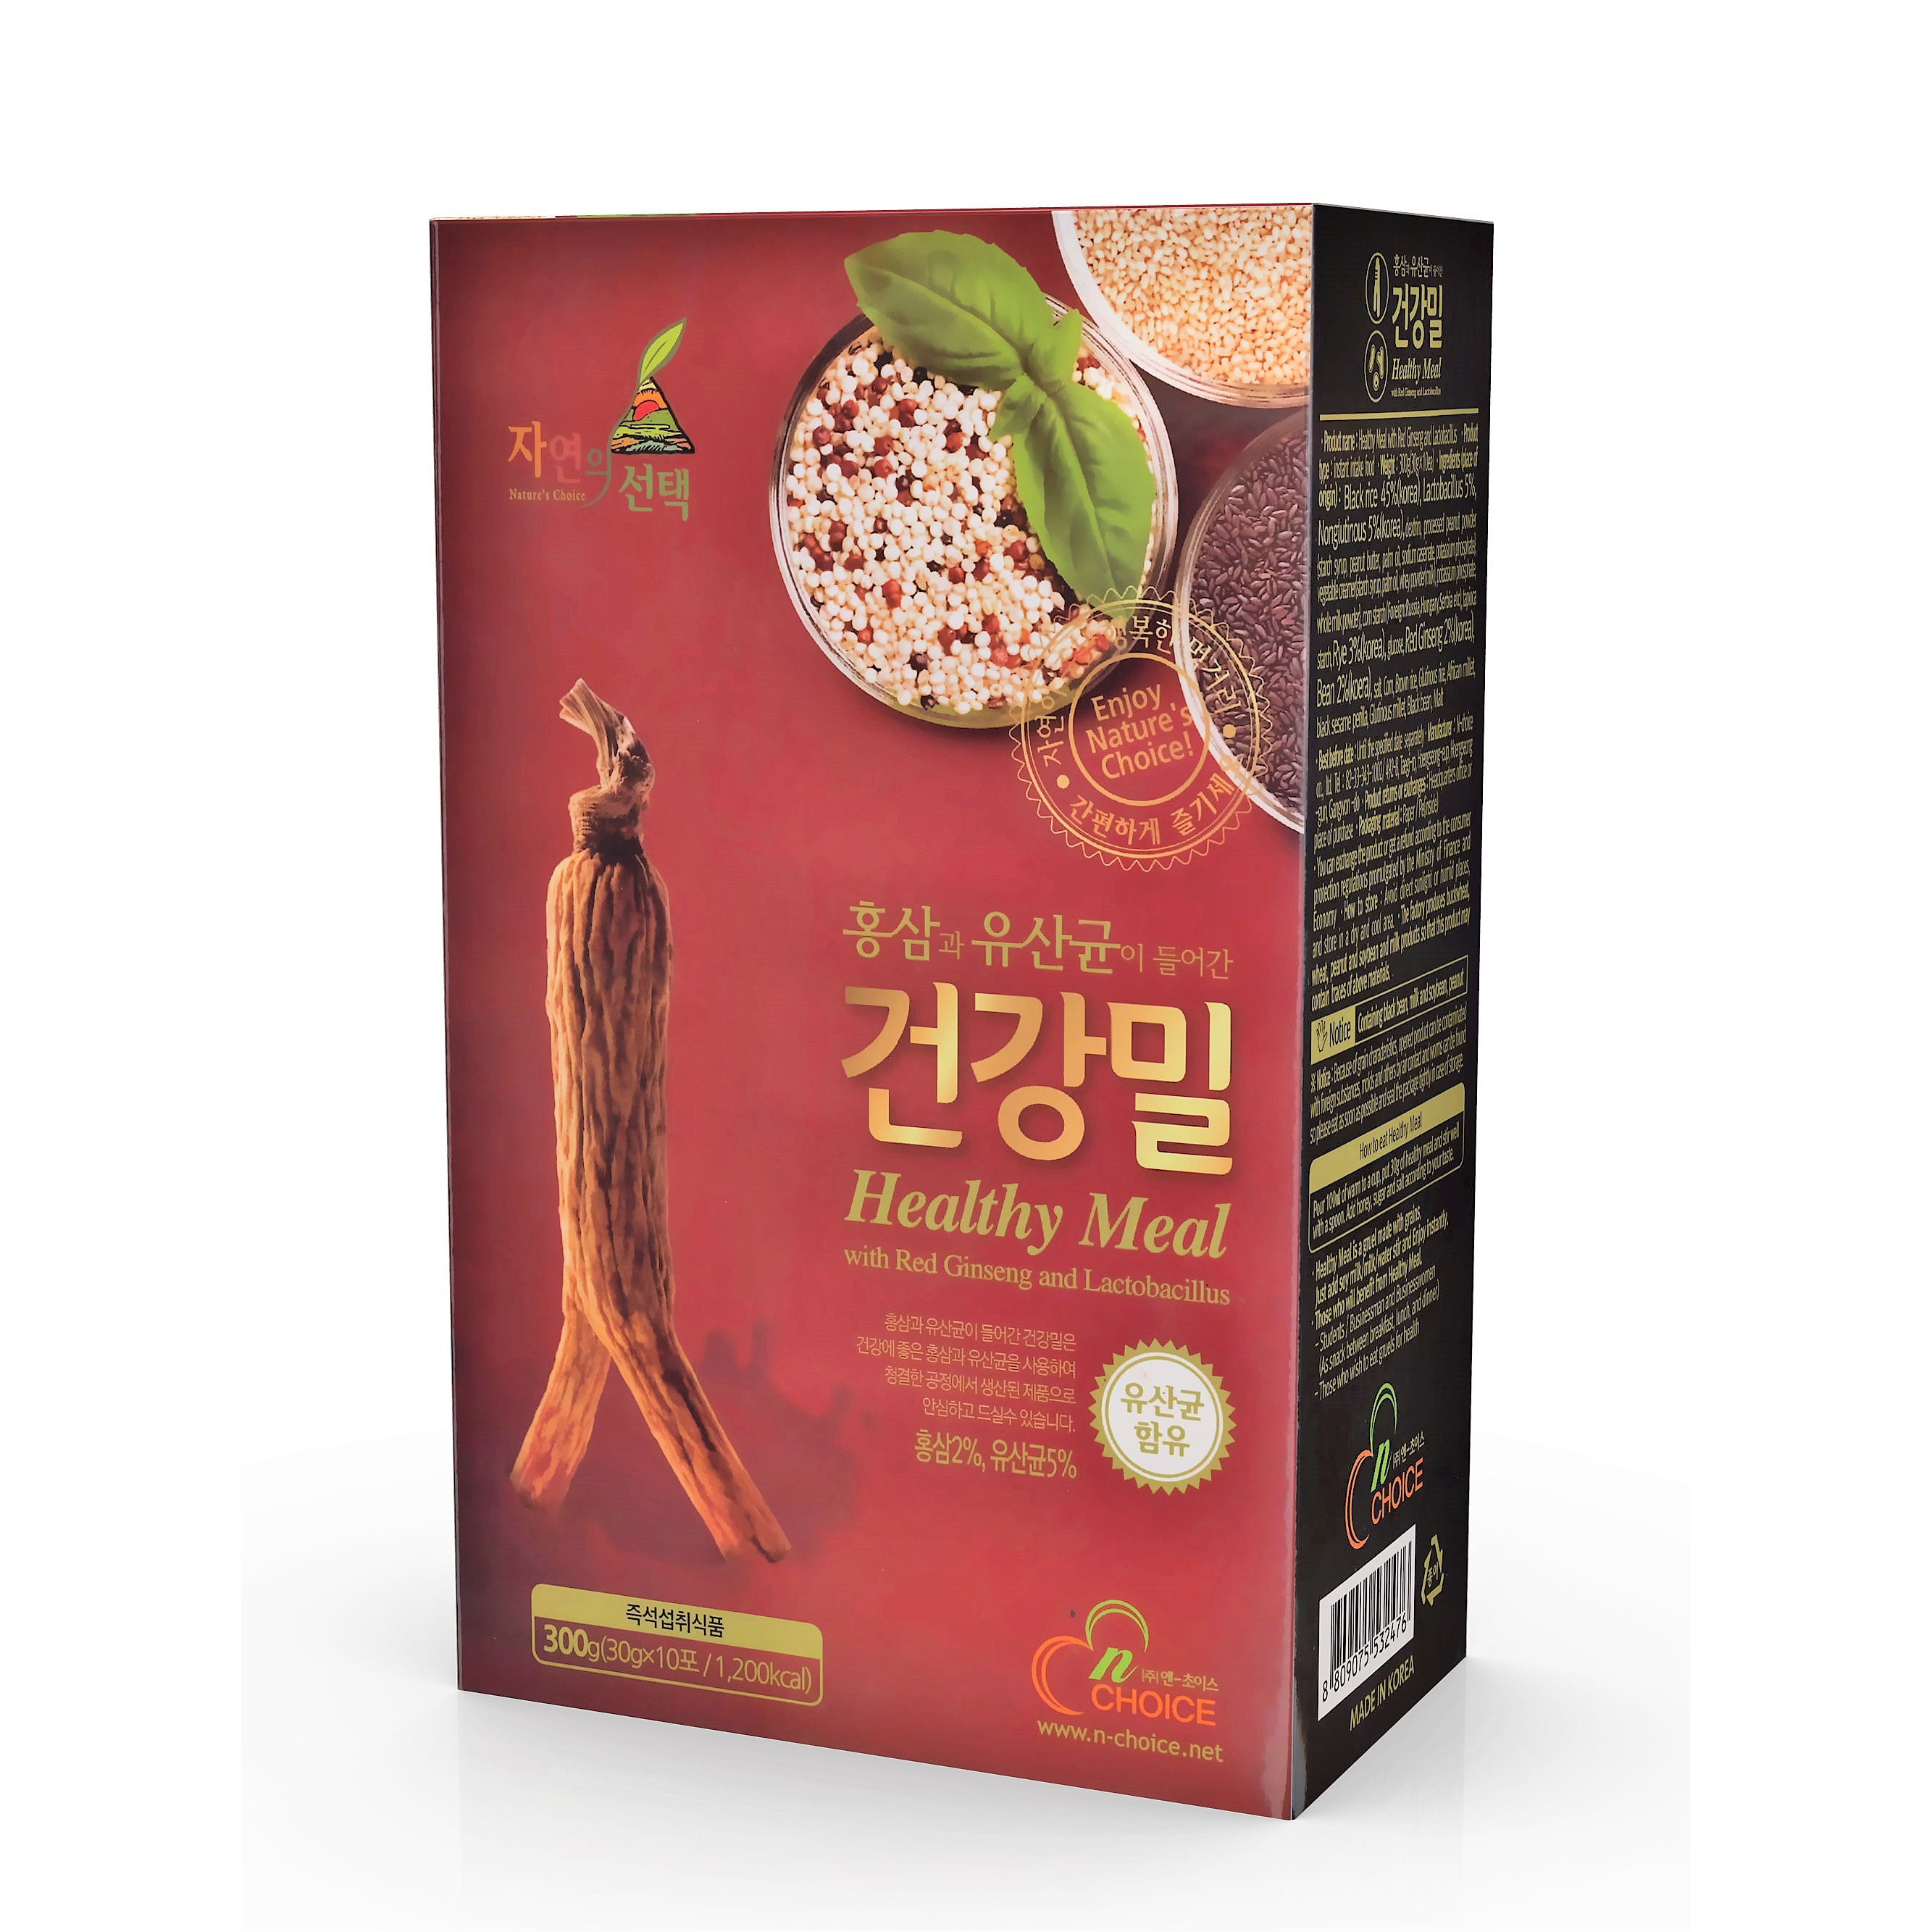 Bột ngũ cốc Hàn Quốc N-Choice Hồng Sâm 300g - hộp 10 gói x 30g/gói